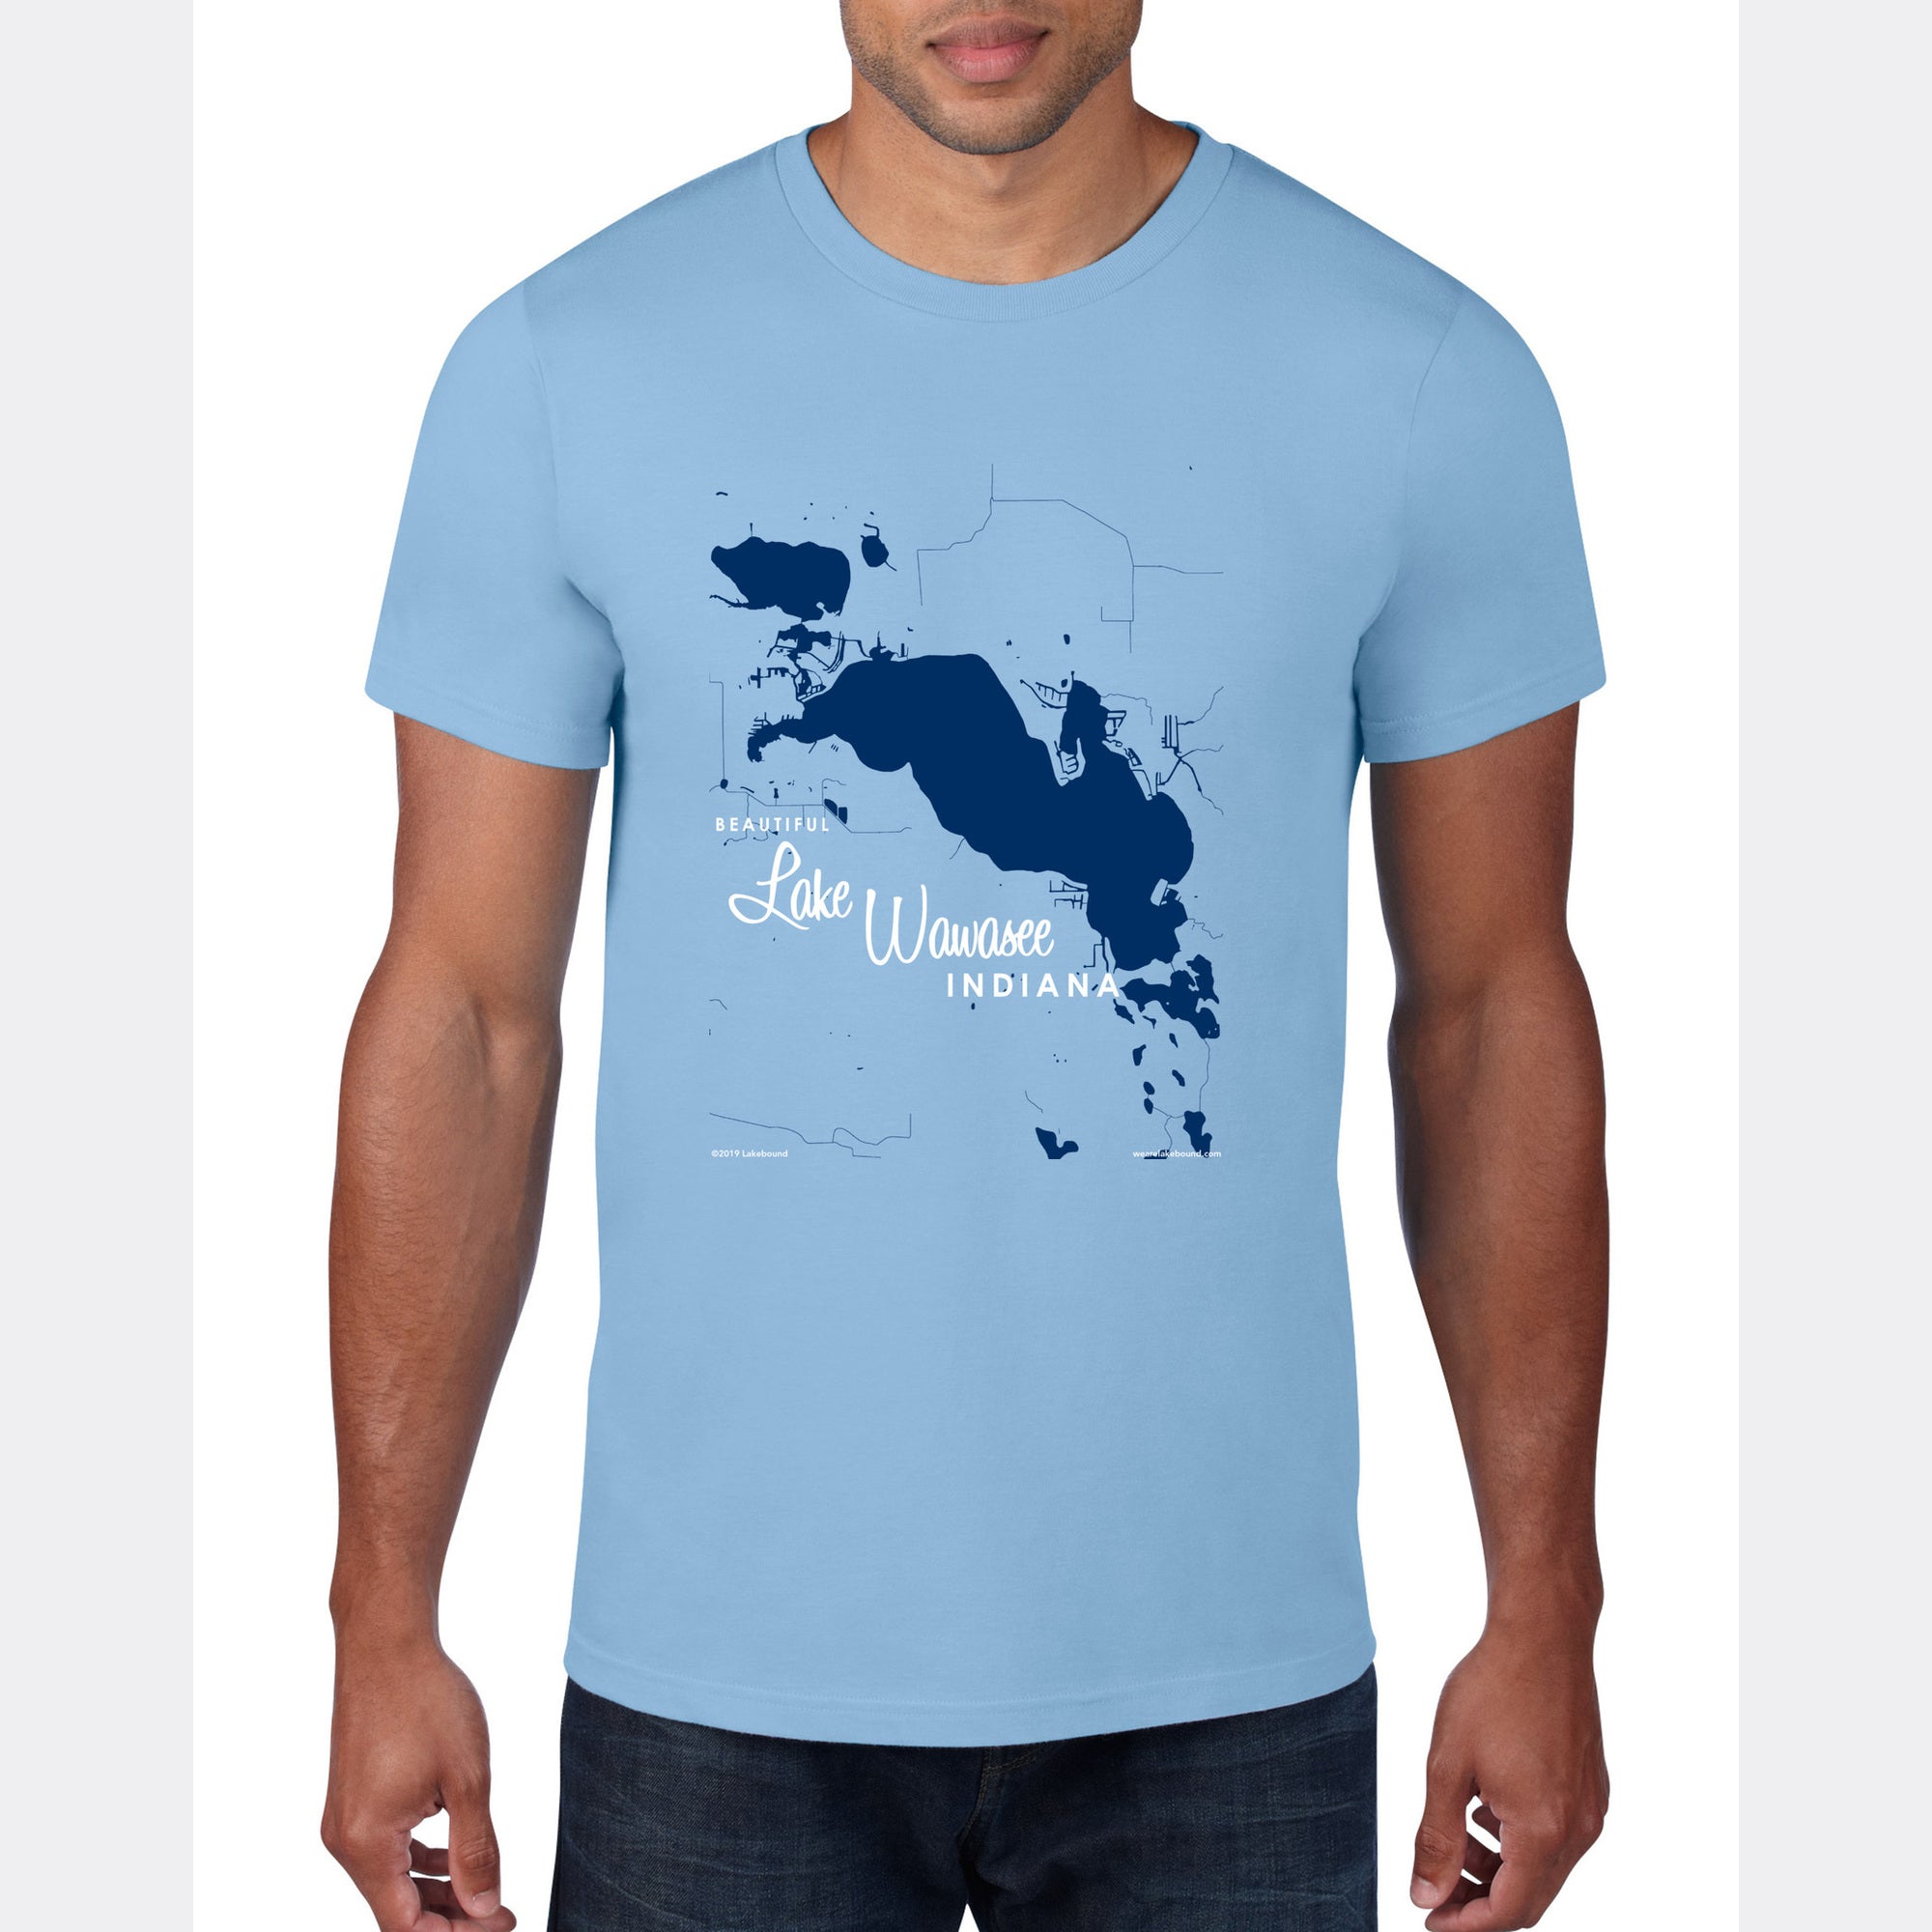 Lake Wawasee Indiana, T-Shirt